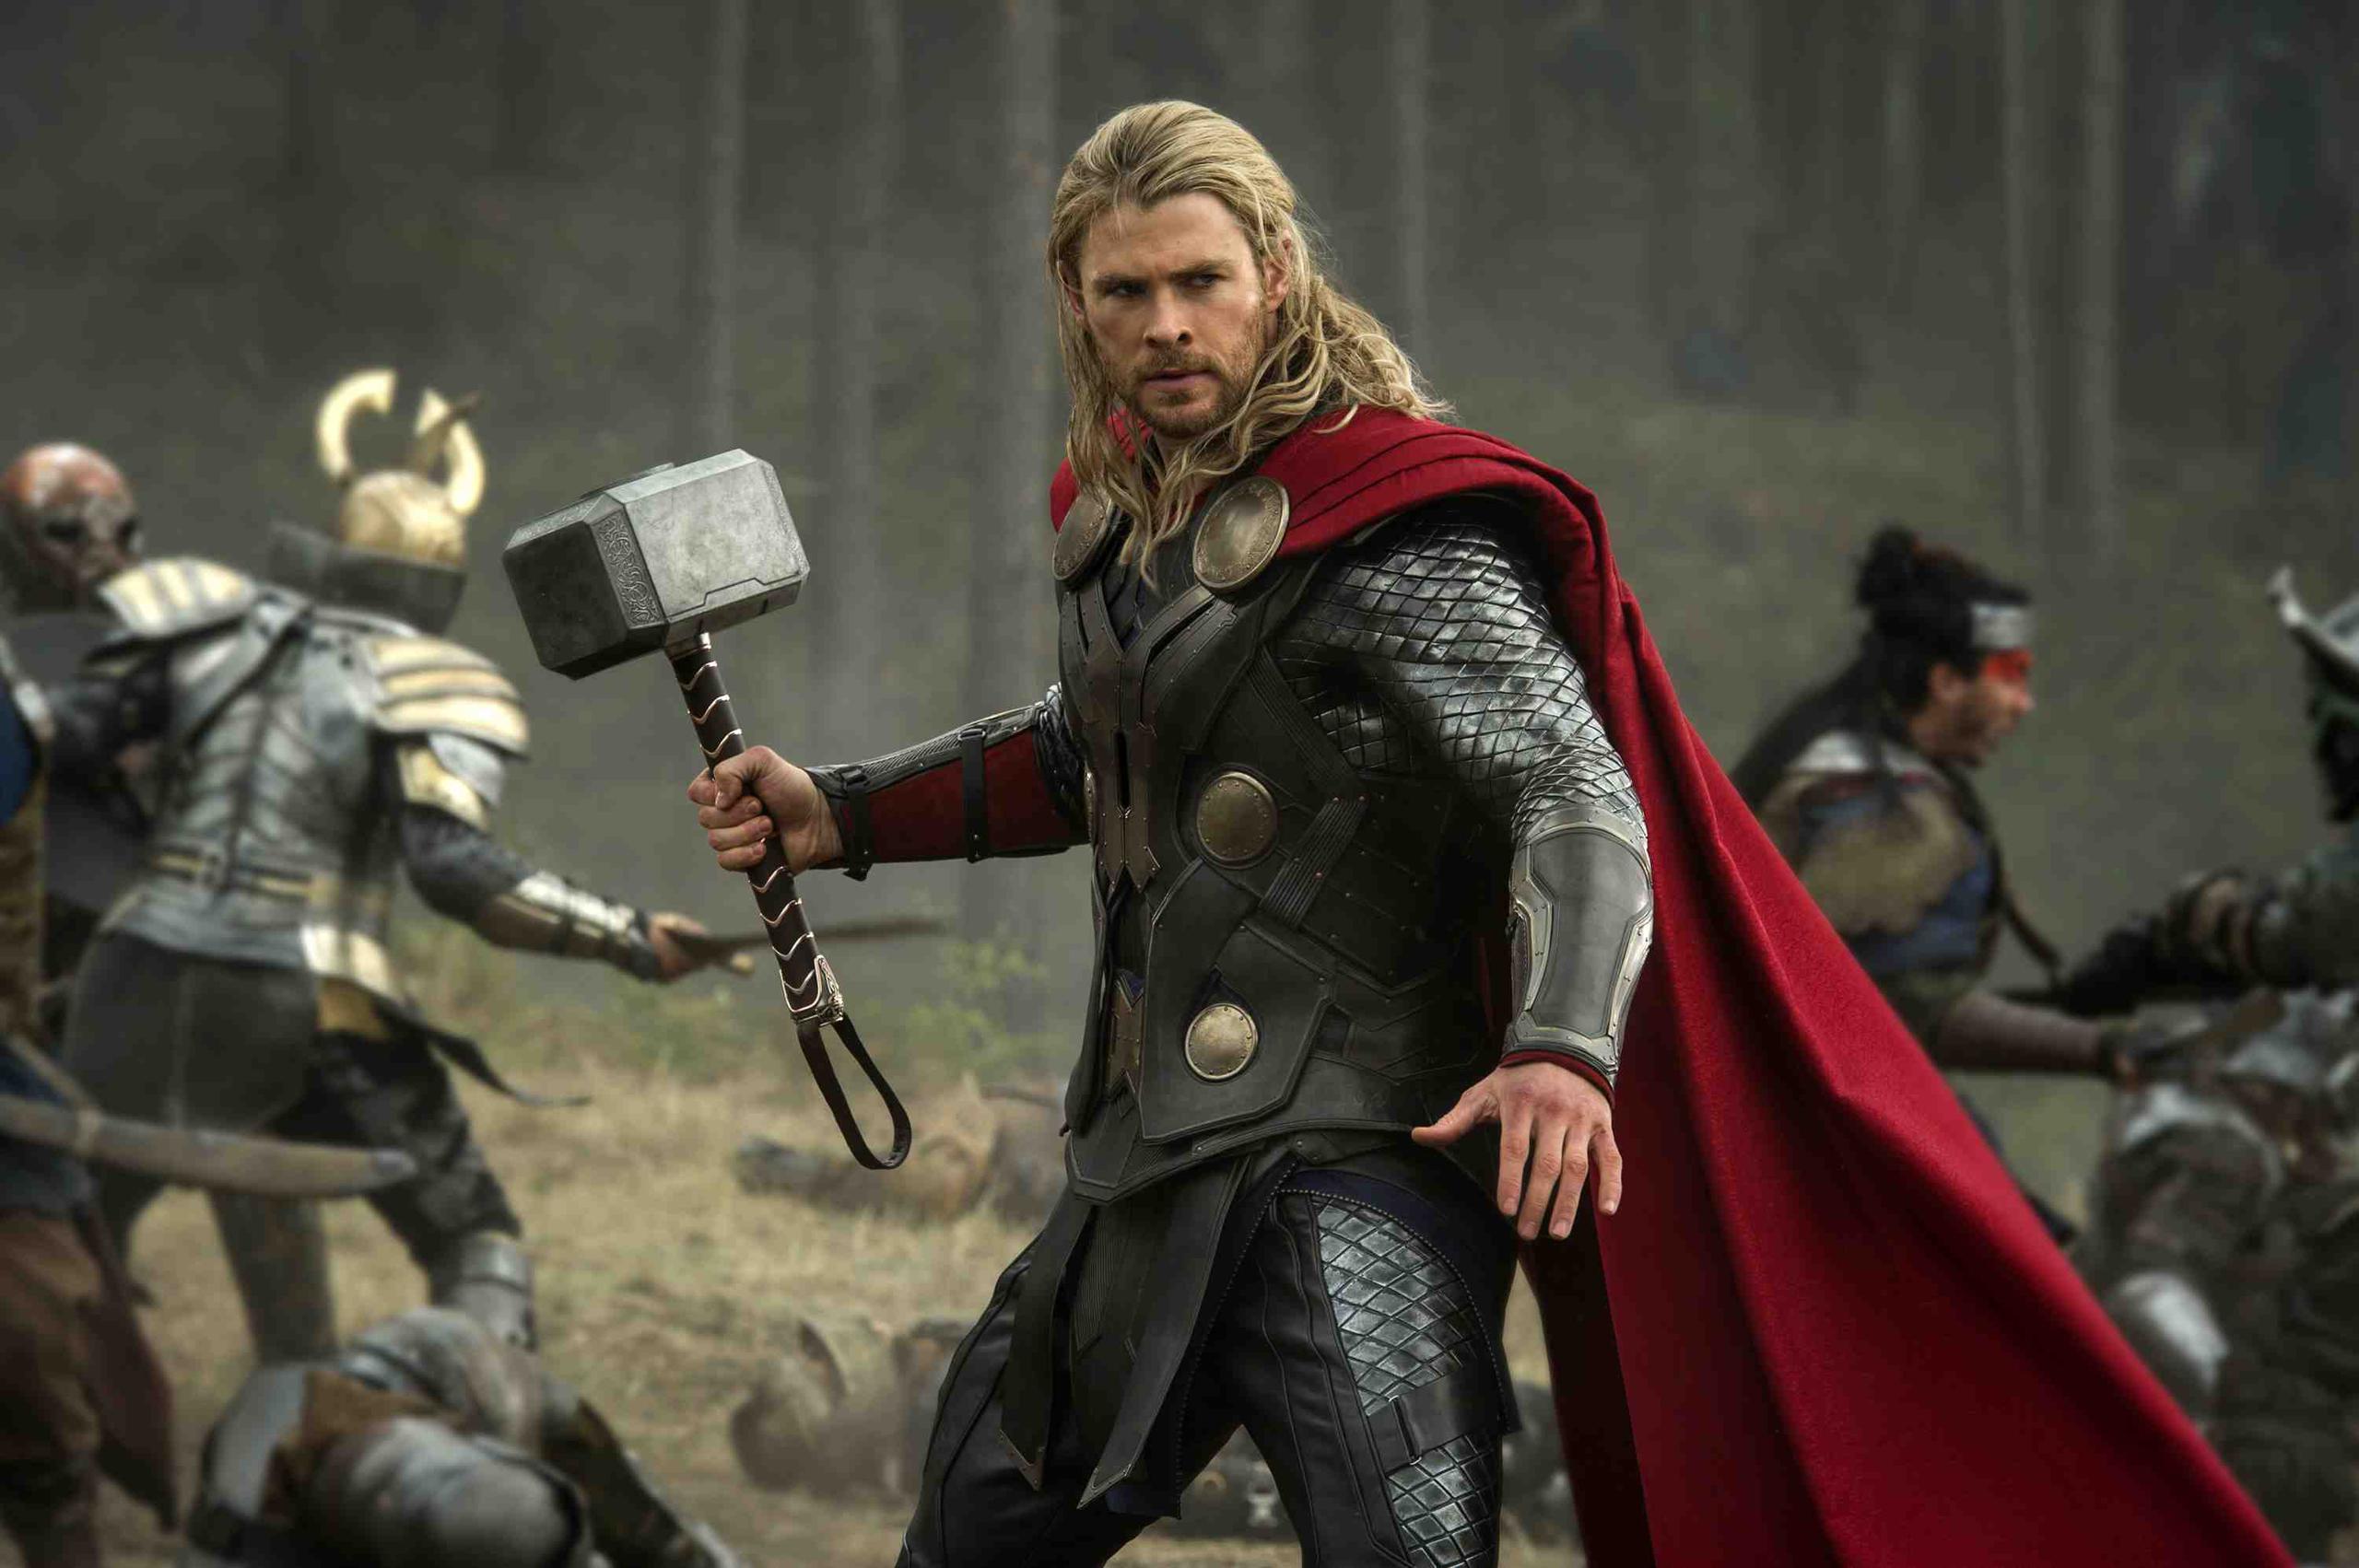 Al actor no le quedan nada de los músculos que lo destacan en "Thor". (Archivo/GFR Media)